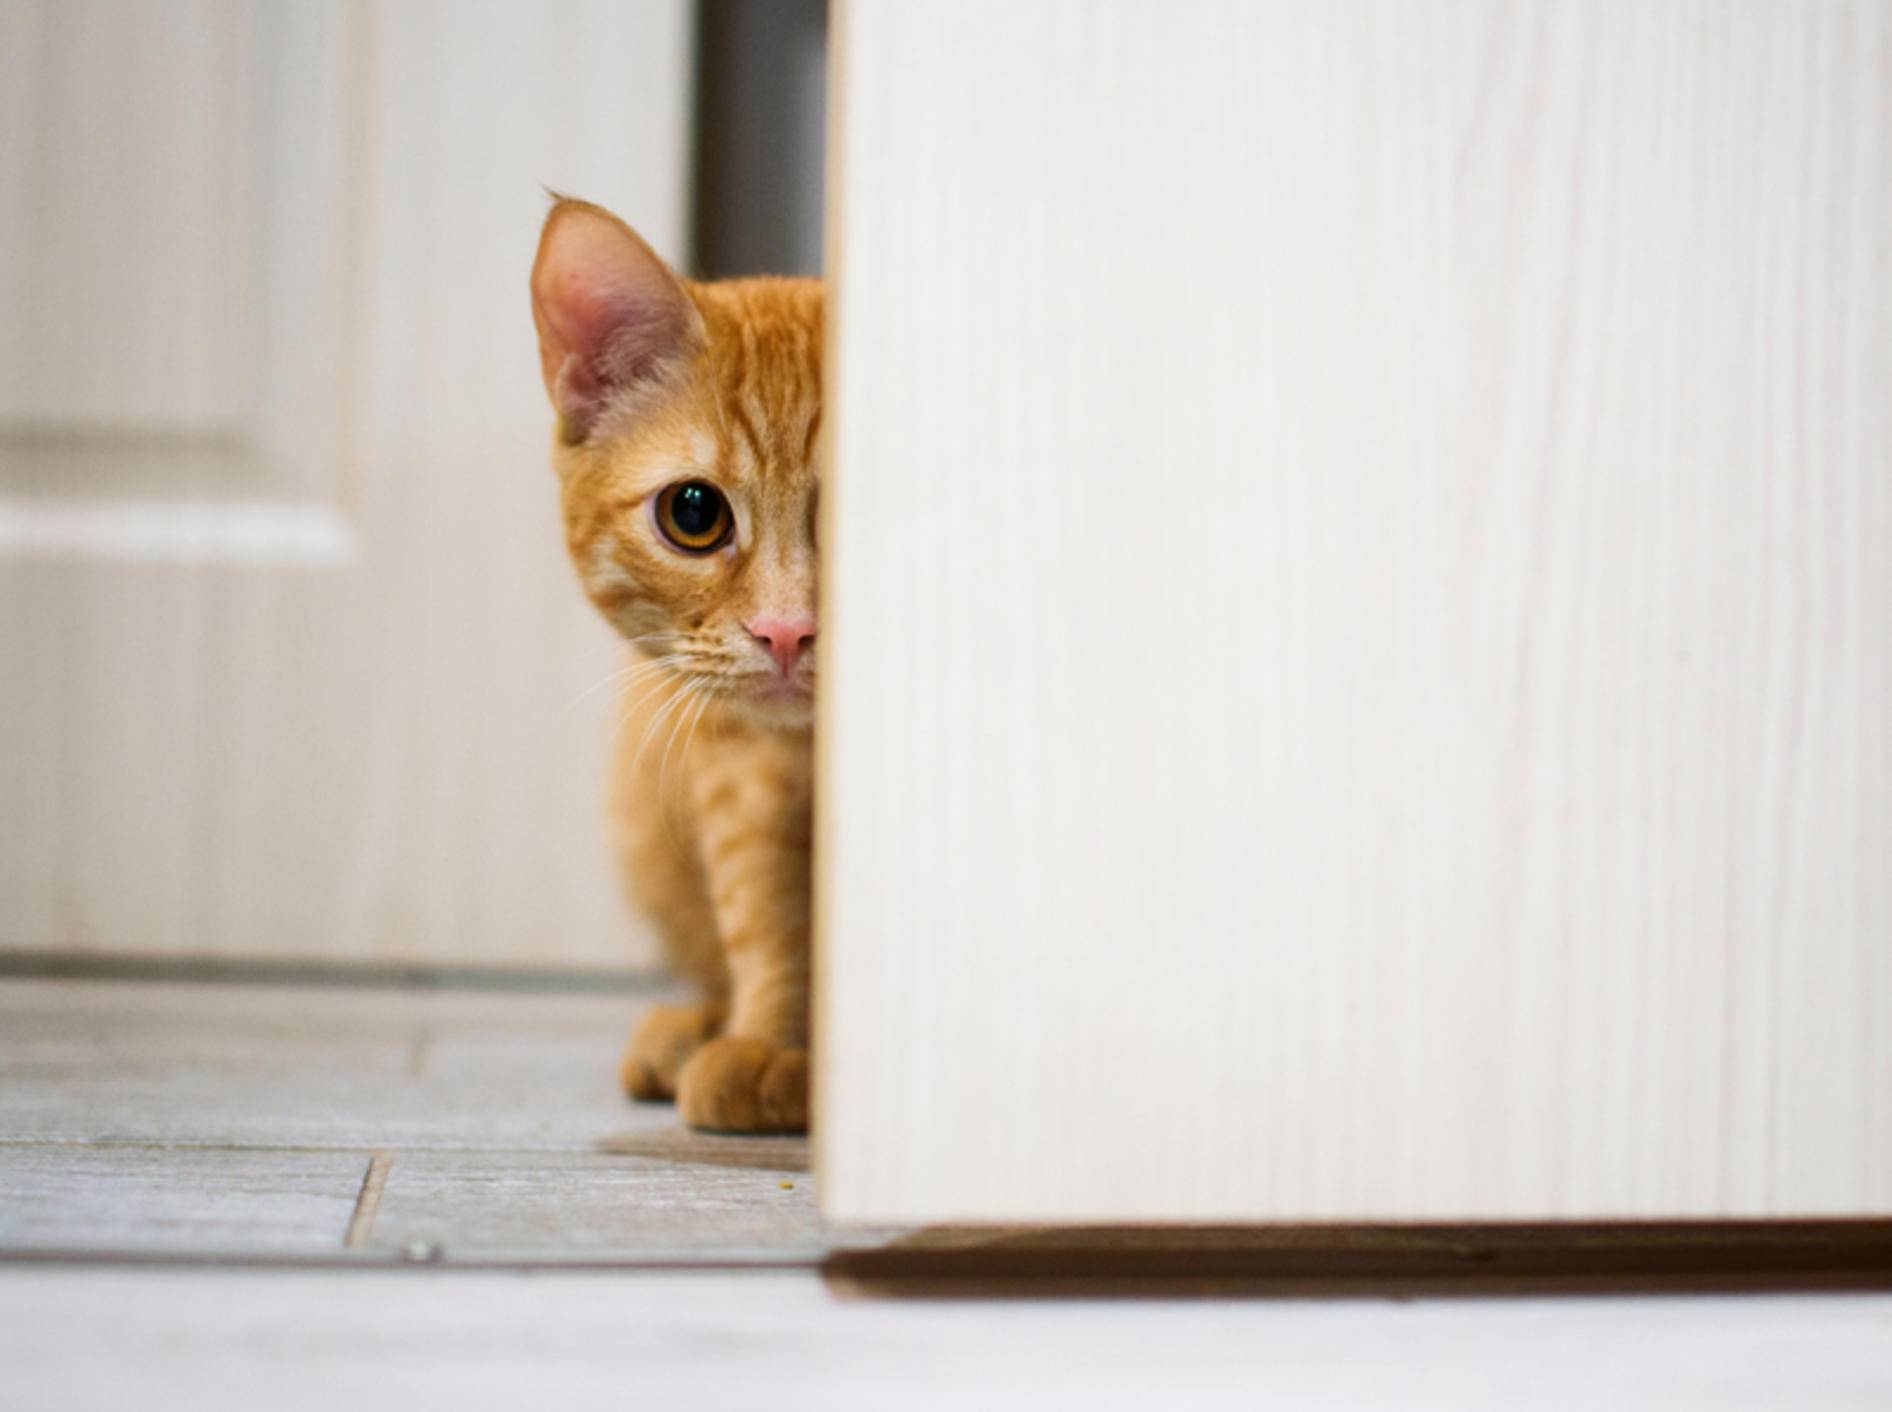 "Ui, ist das spannend! Was sich wohl hinter der Tür befindet?": Neugierige Katze will ausbrechen – Shutterstock / Noskov Vladimir